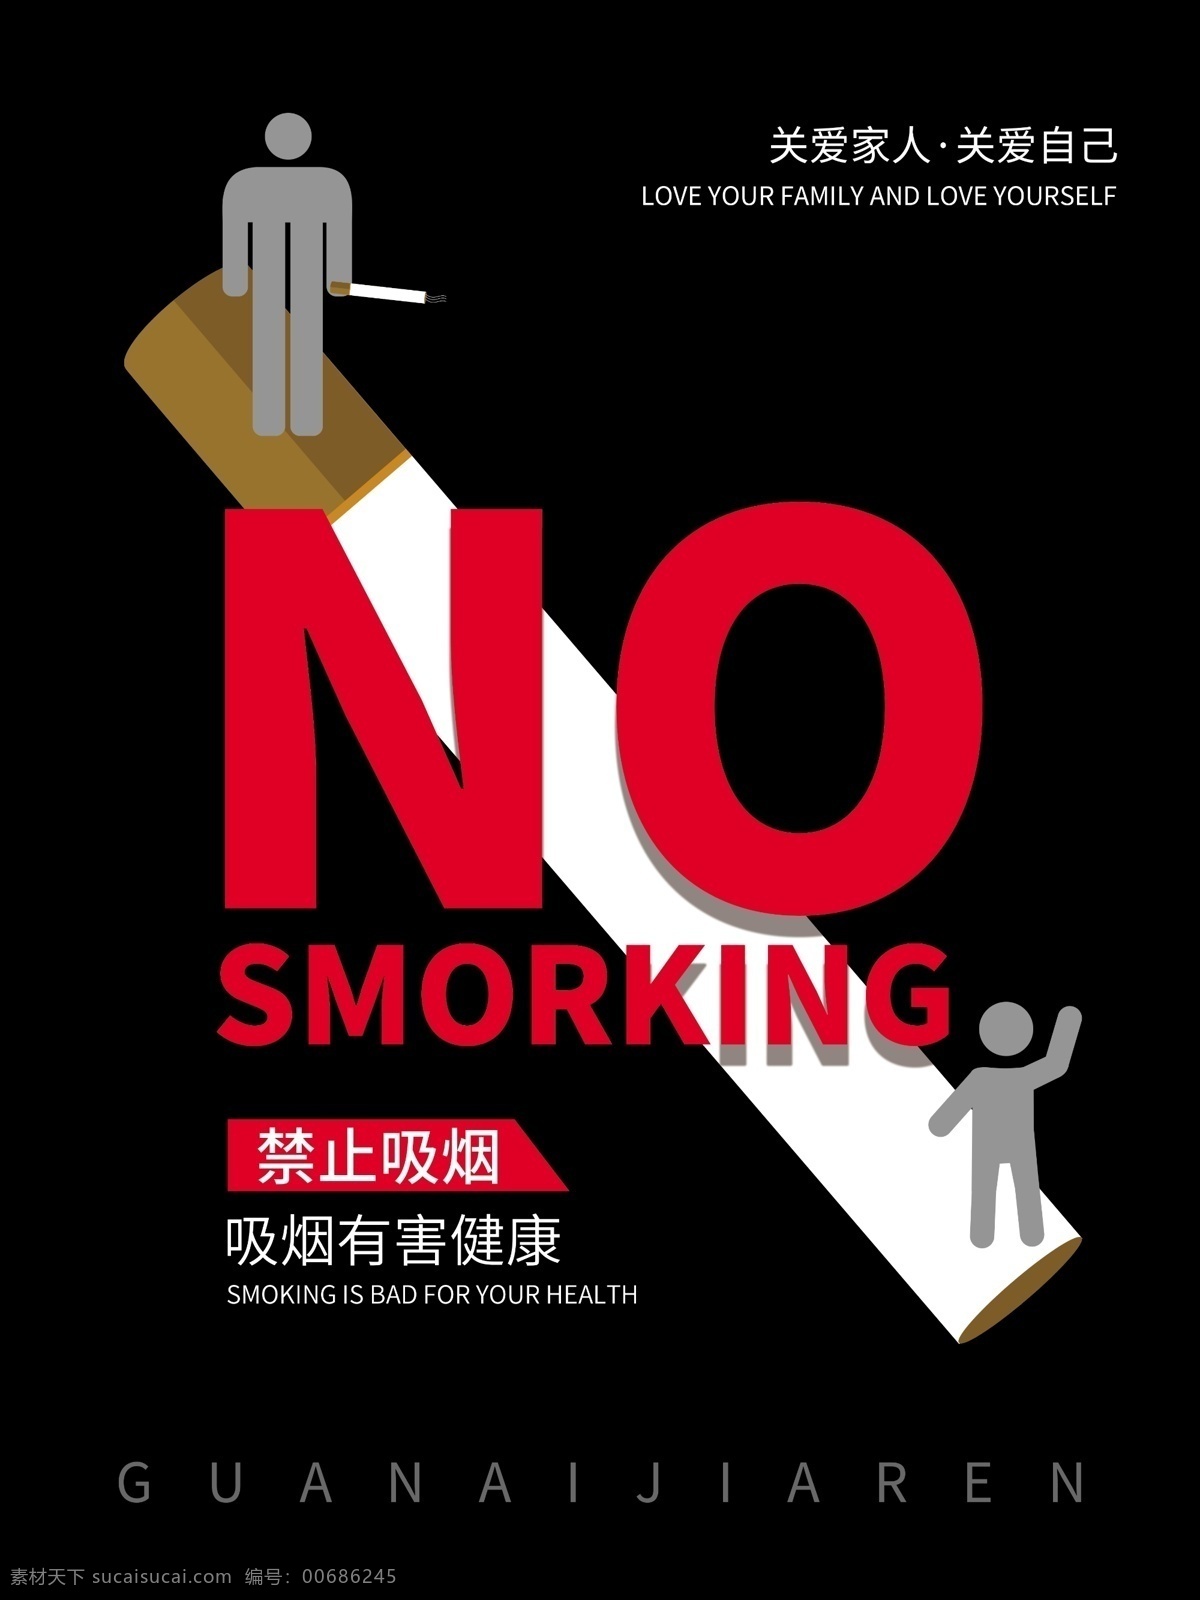 红 黑 醒目 创意 公益 海报 禁止 吸烟 健康 关爱 家人